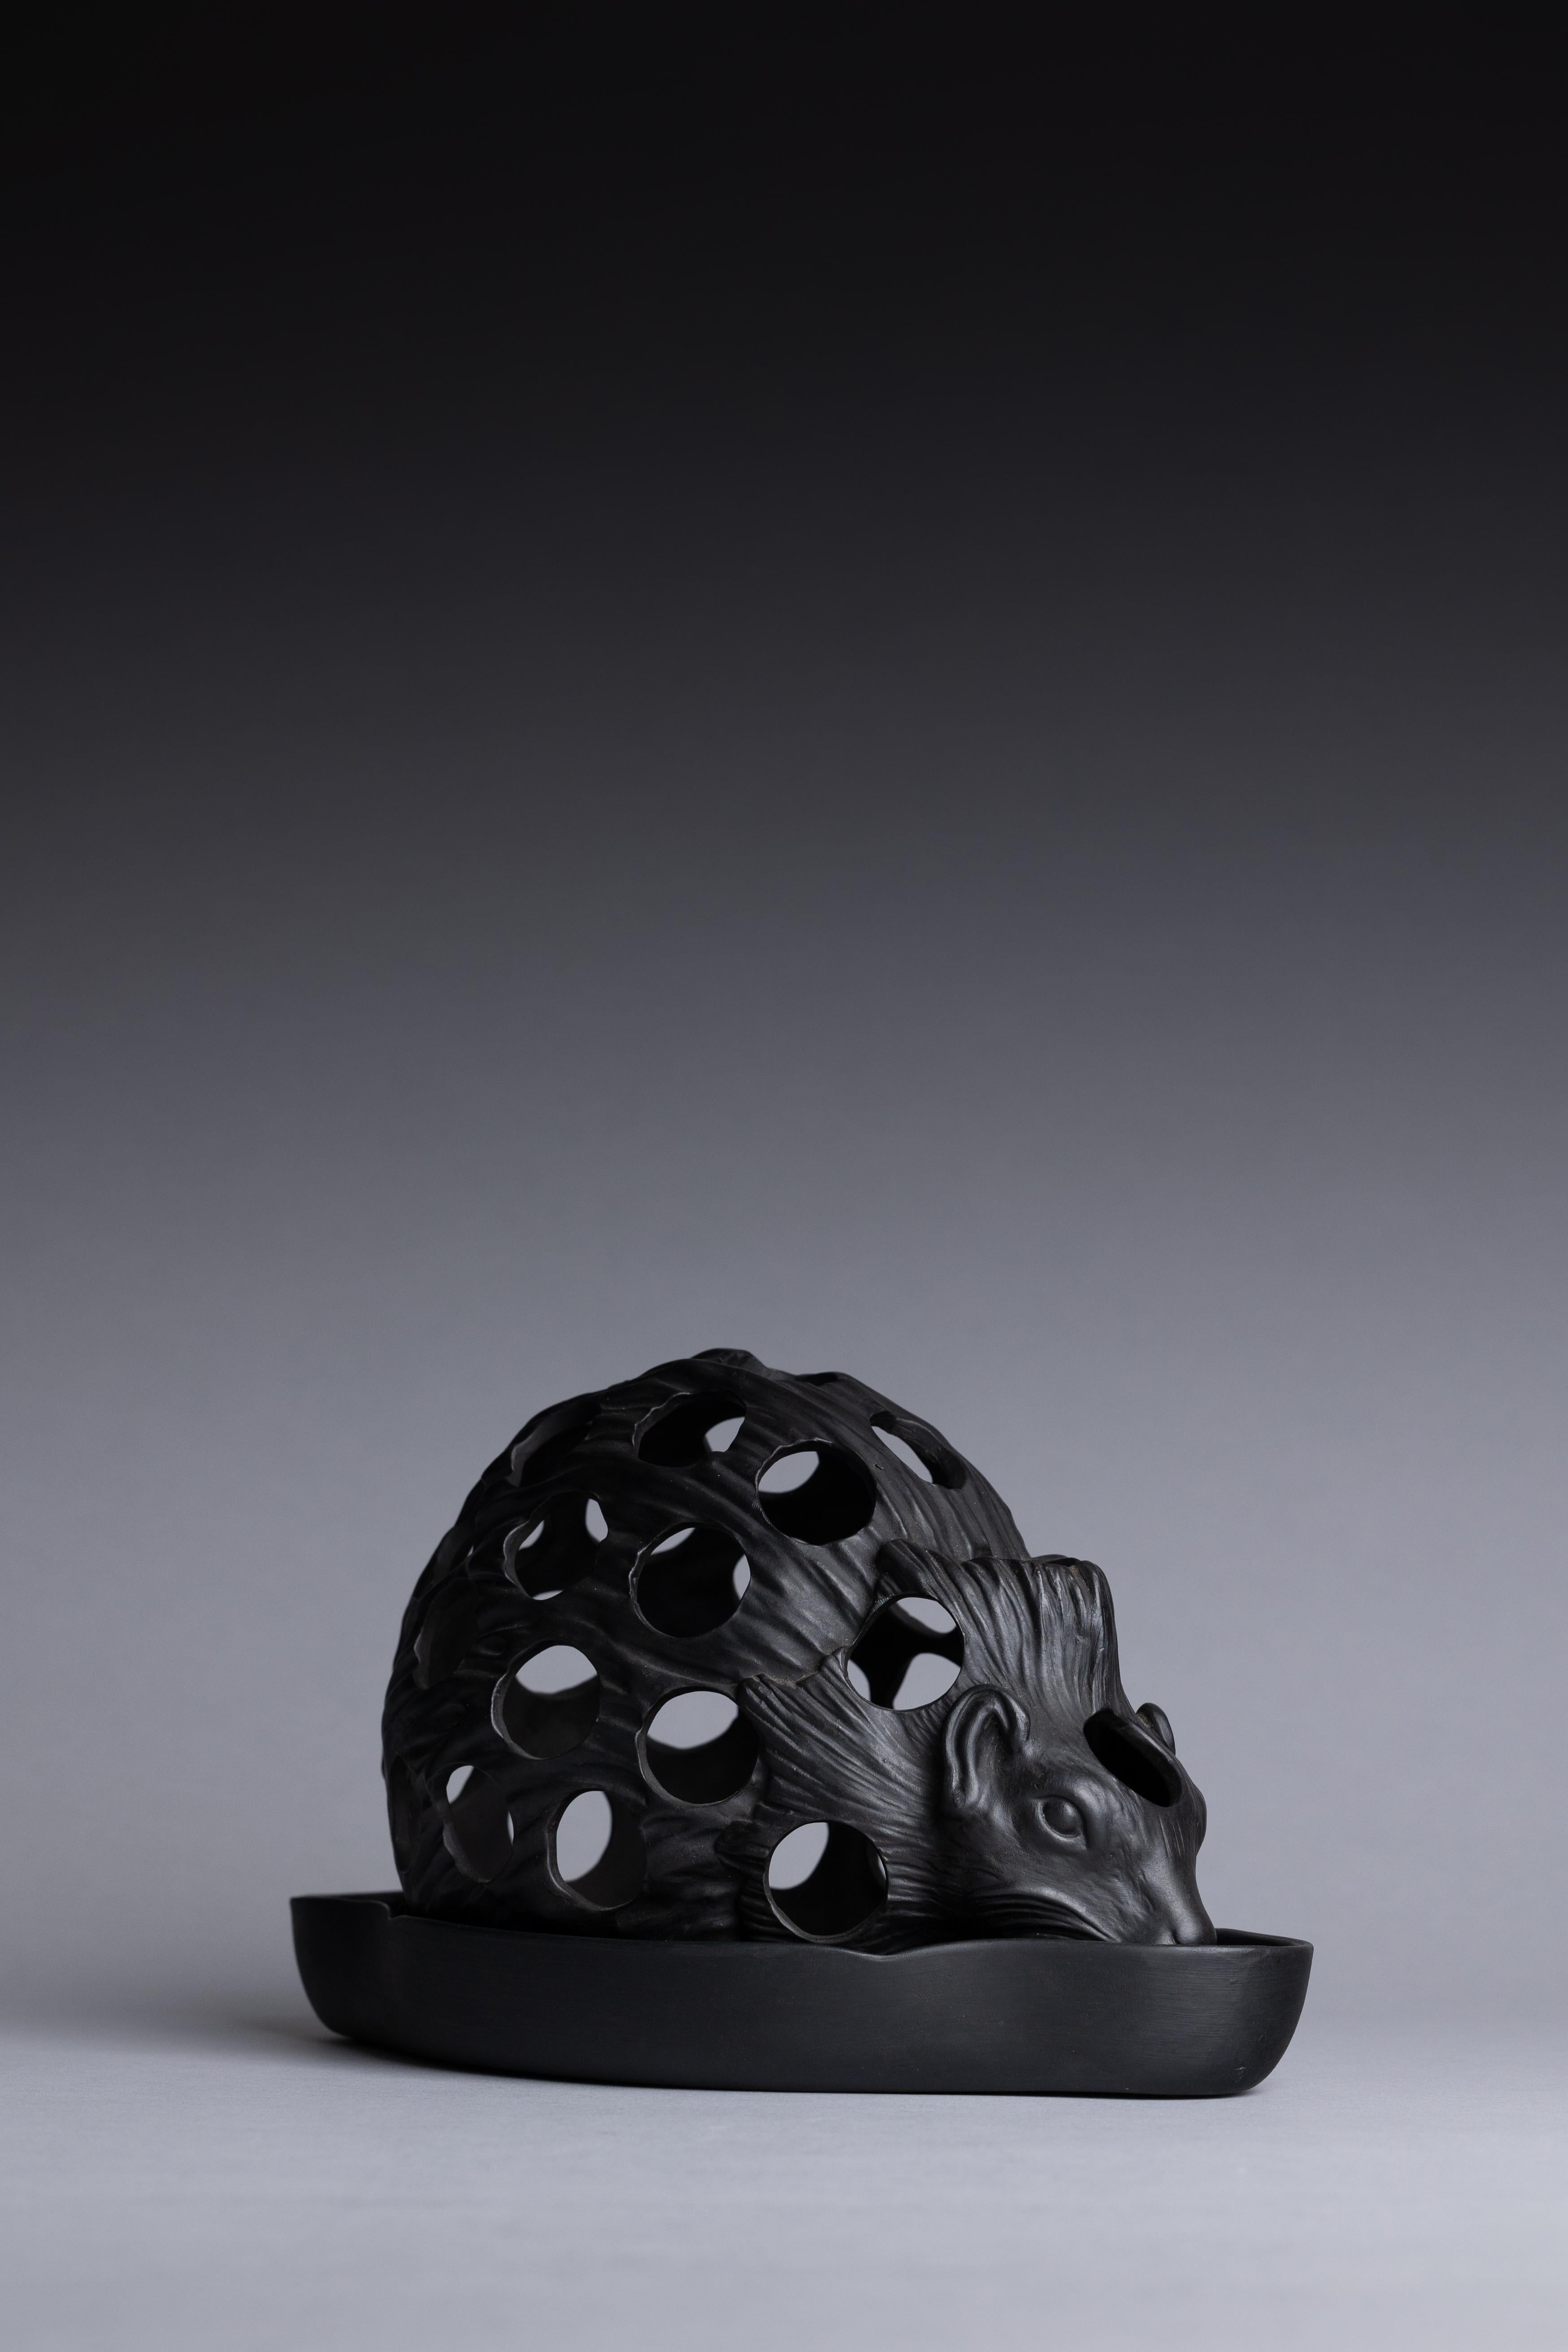 Ein schwarzer Basalttopf in Form eines Igels, hergestellt von Wedgwood in der Mitte des 19. Jahrhunderts.

Dieses einzigartige Objekt, das wie ein lebendiger kleiner Igel geformt ist, wurde für die Aussaat von Blumenzwiebeln verwendet: Die untere